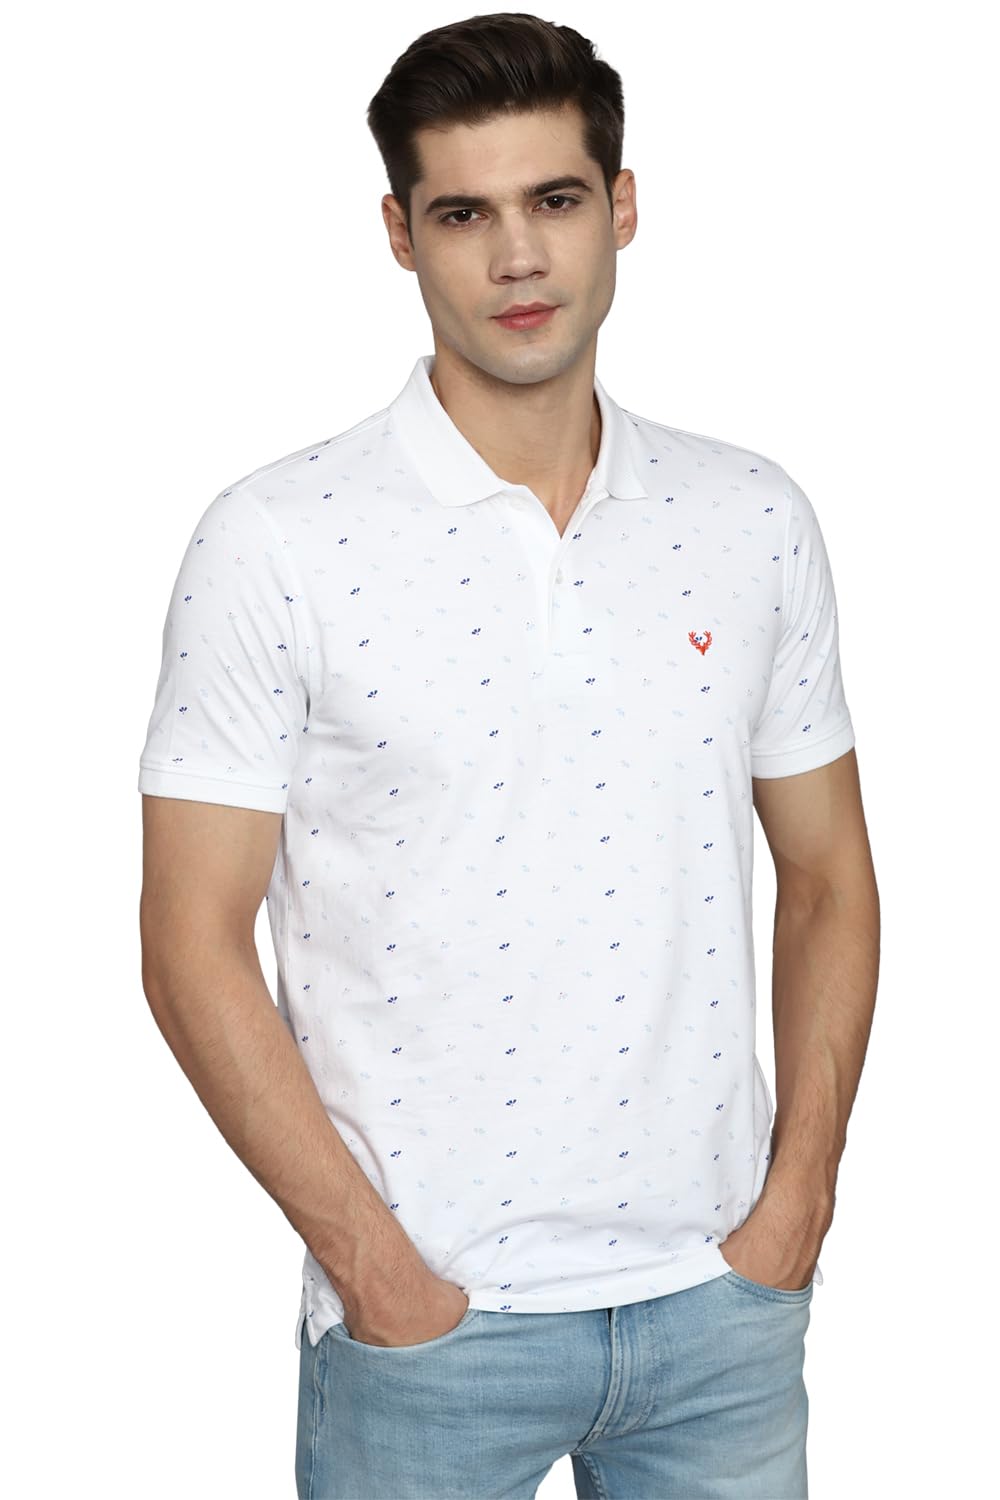 Allen Solly Men's Regular Fit T-Shirt (ASKPCURGFJ75298_White XL)